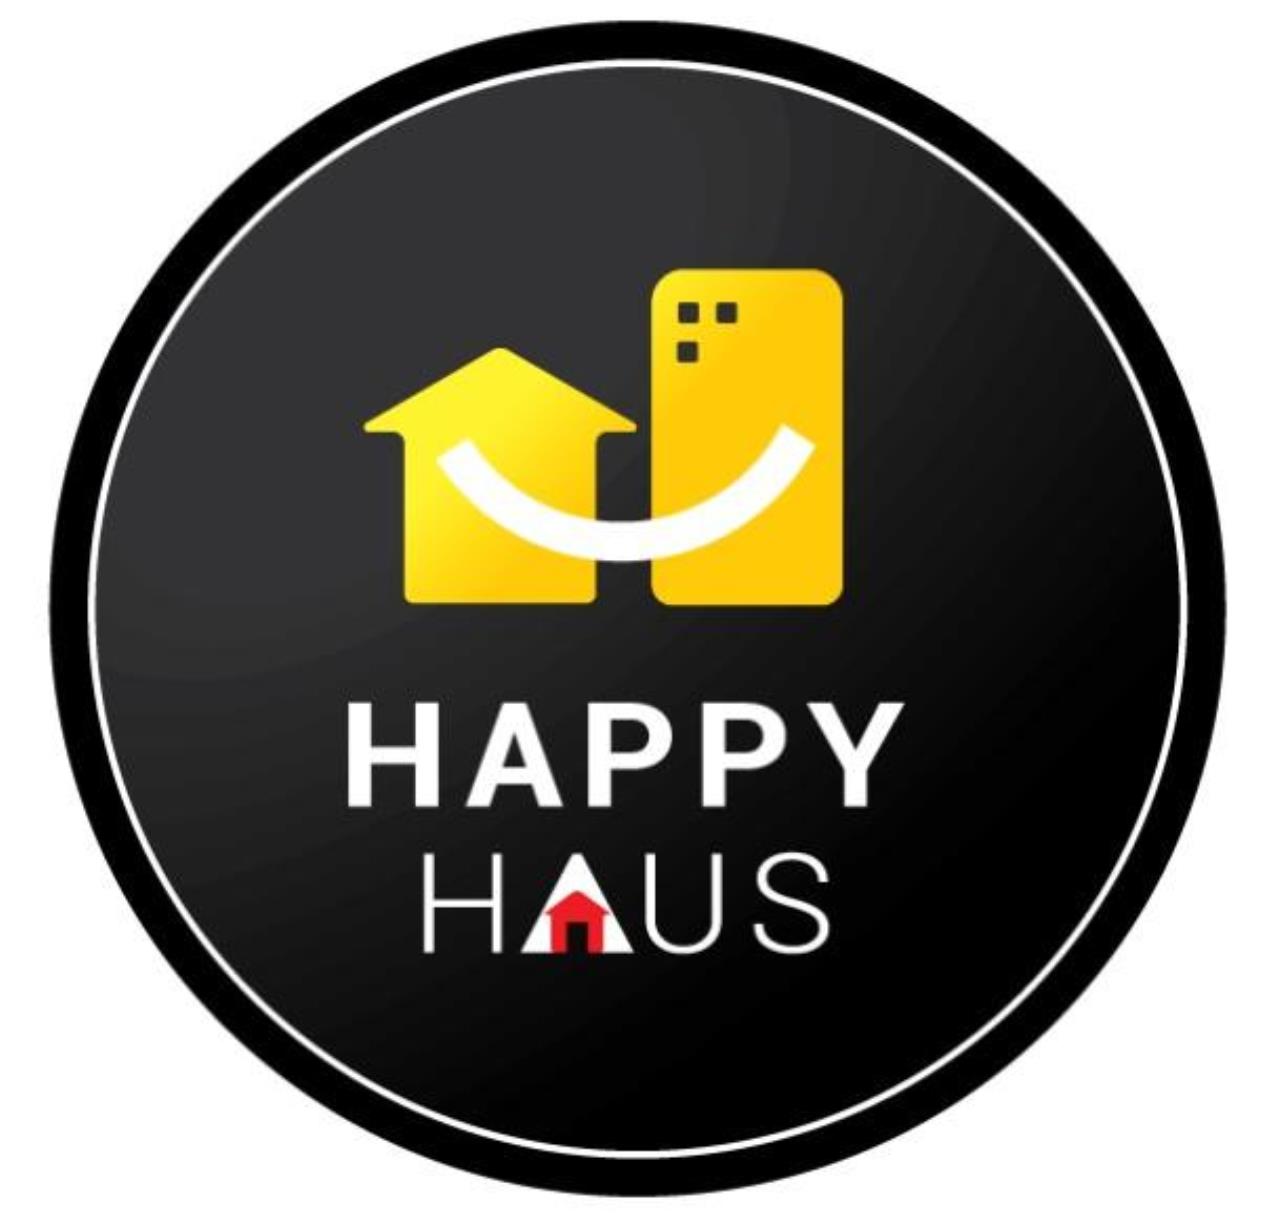 The Happy Haus